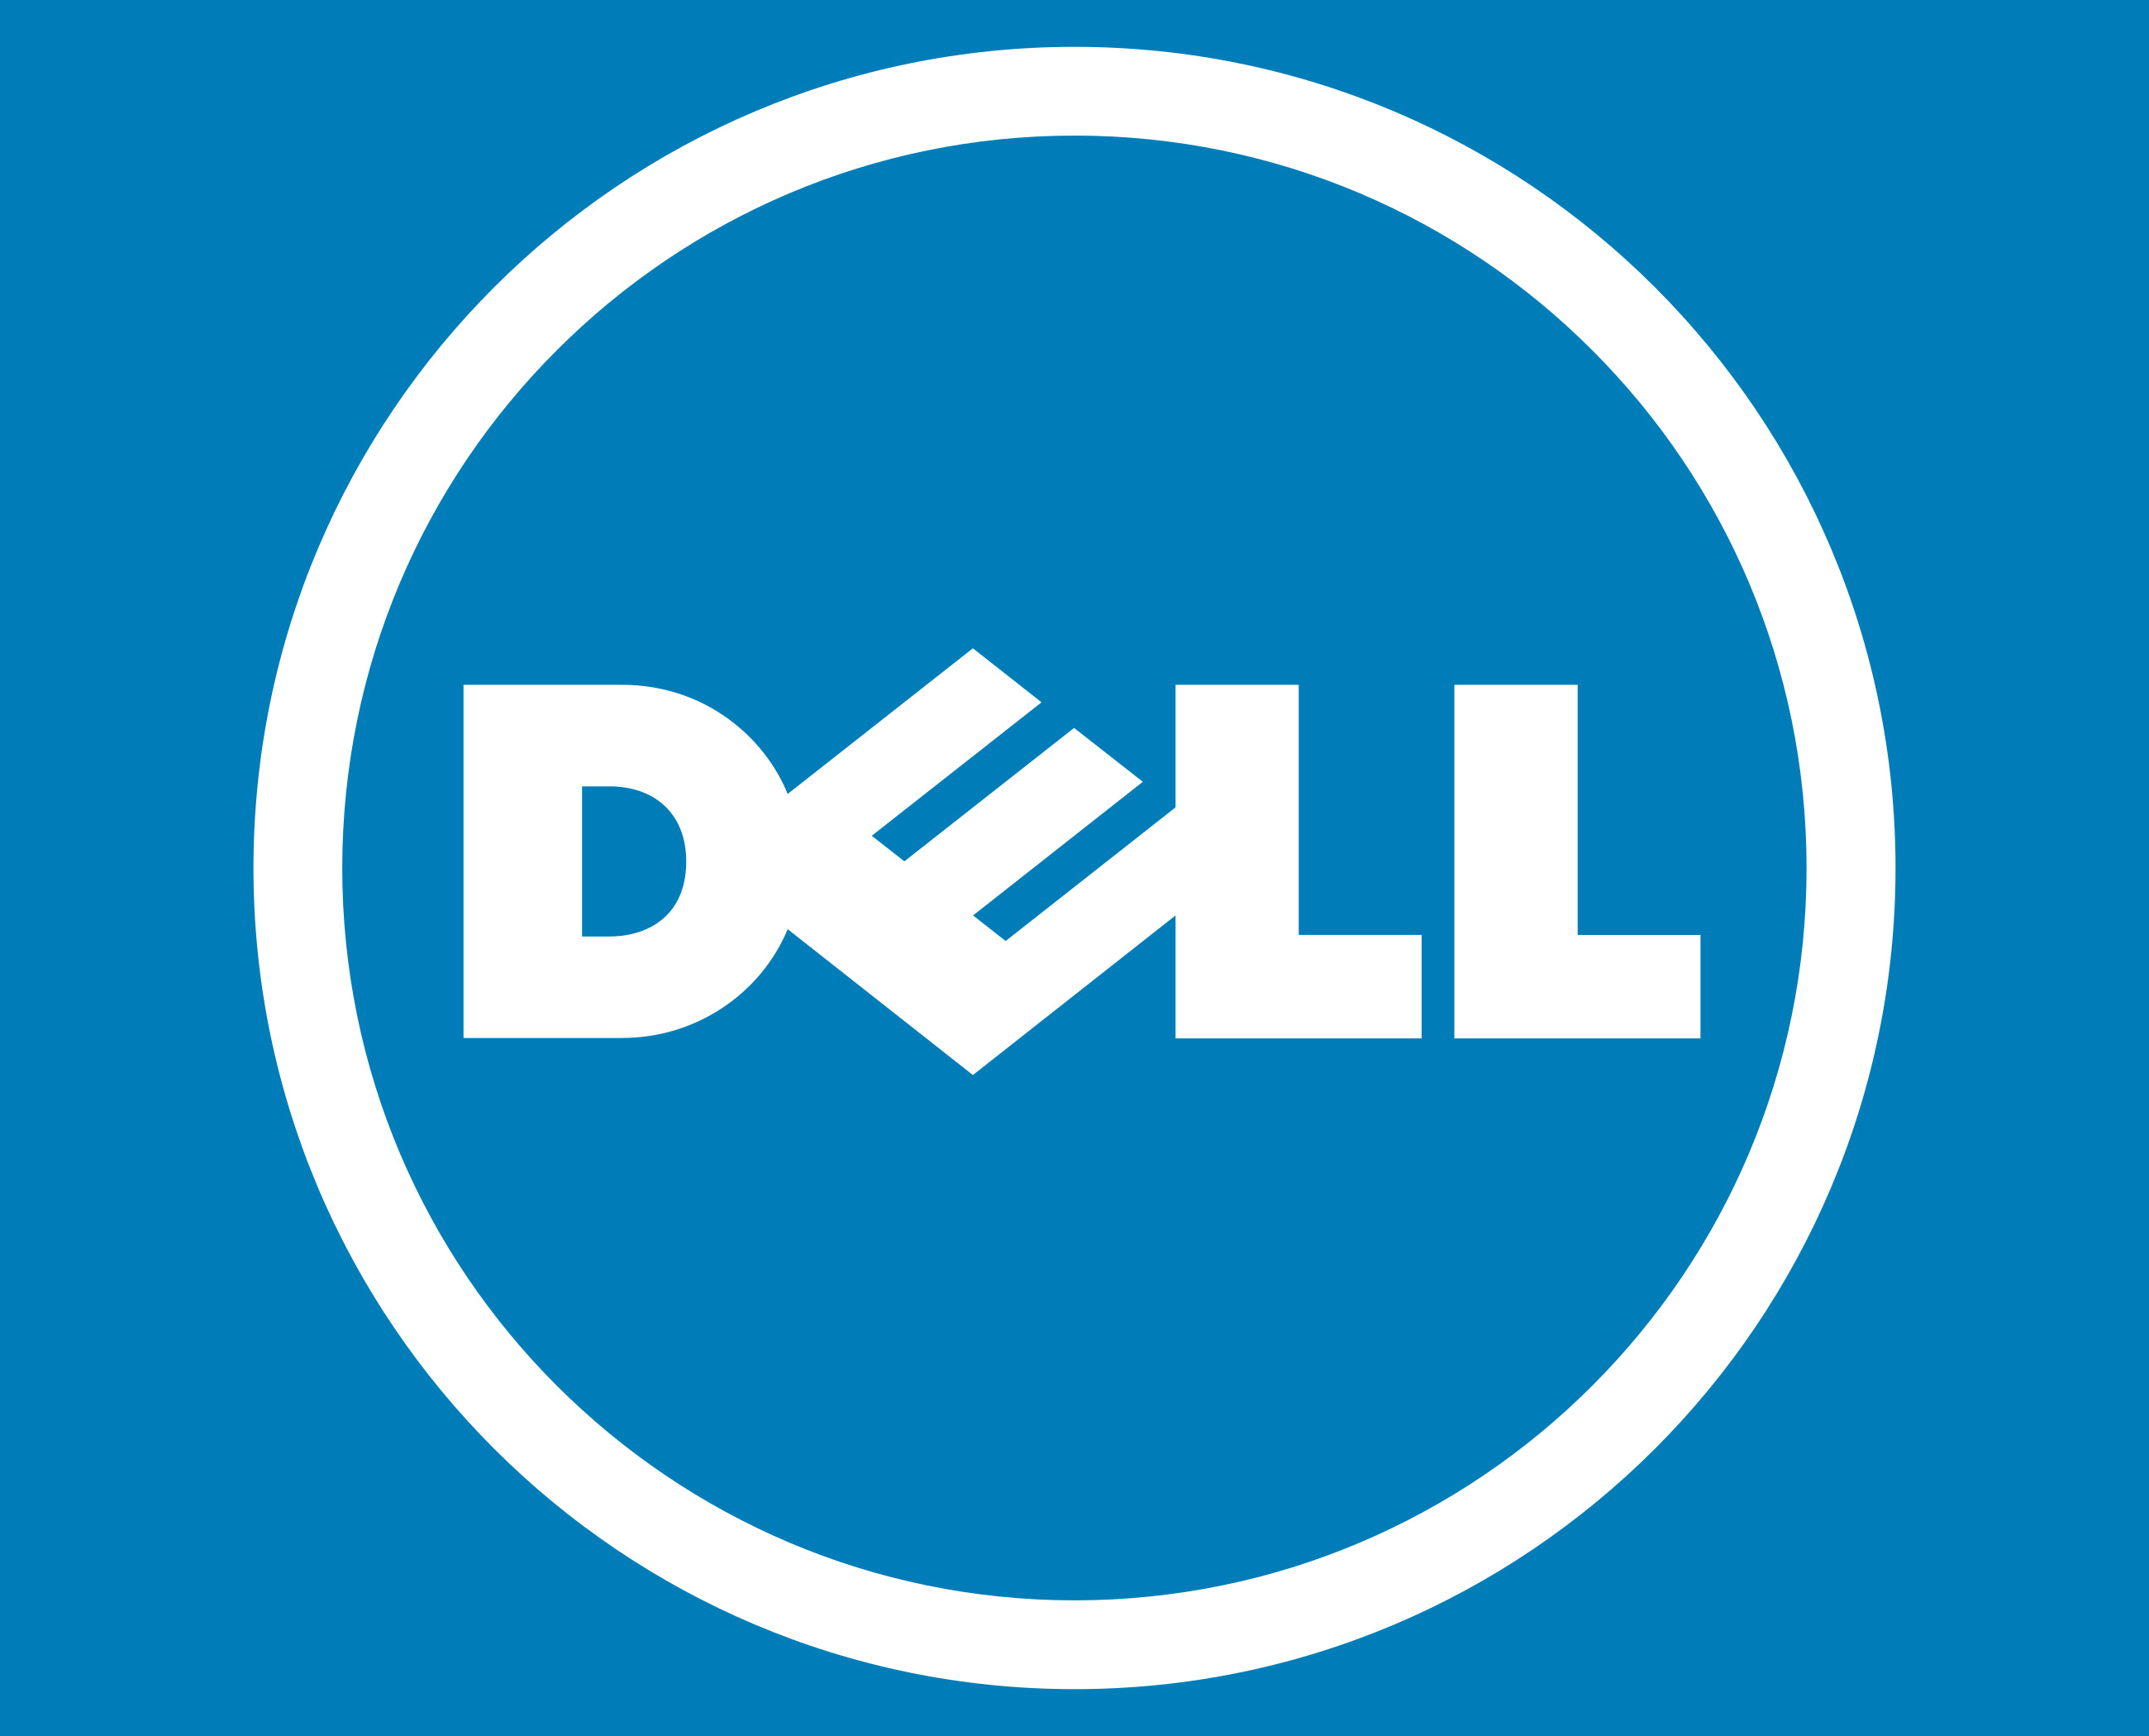 Dell zapowiada, e z czasem bdzie si przerzuca na energi odnawialn